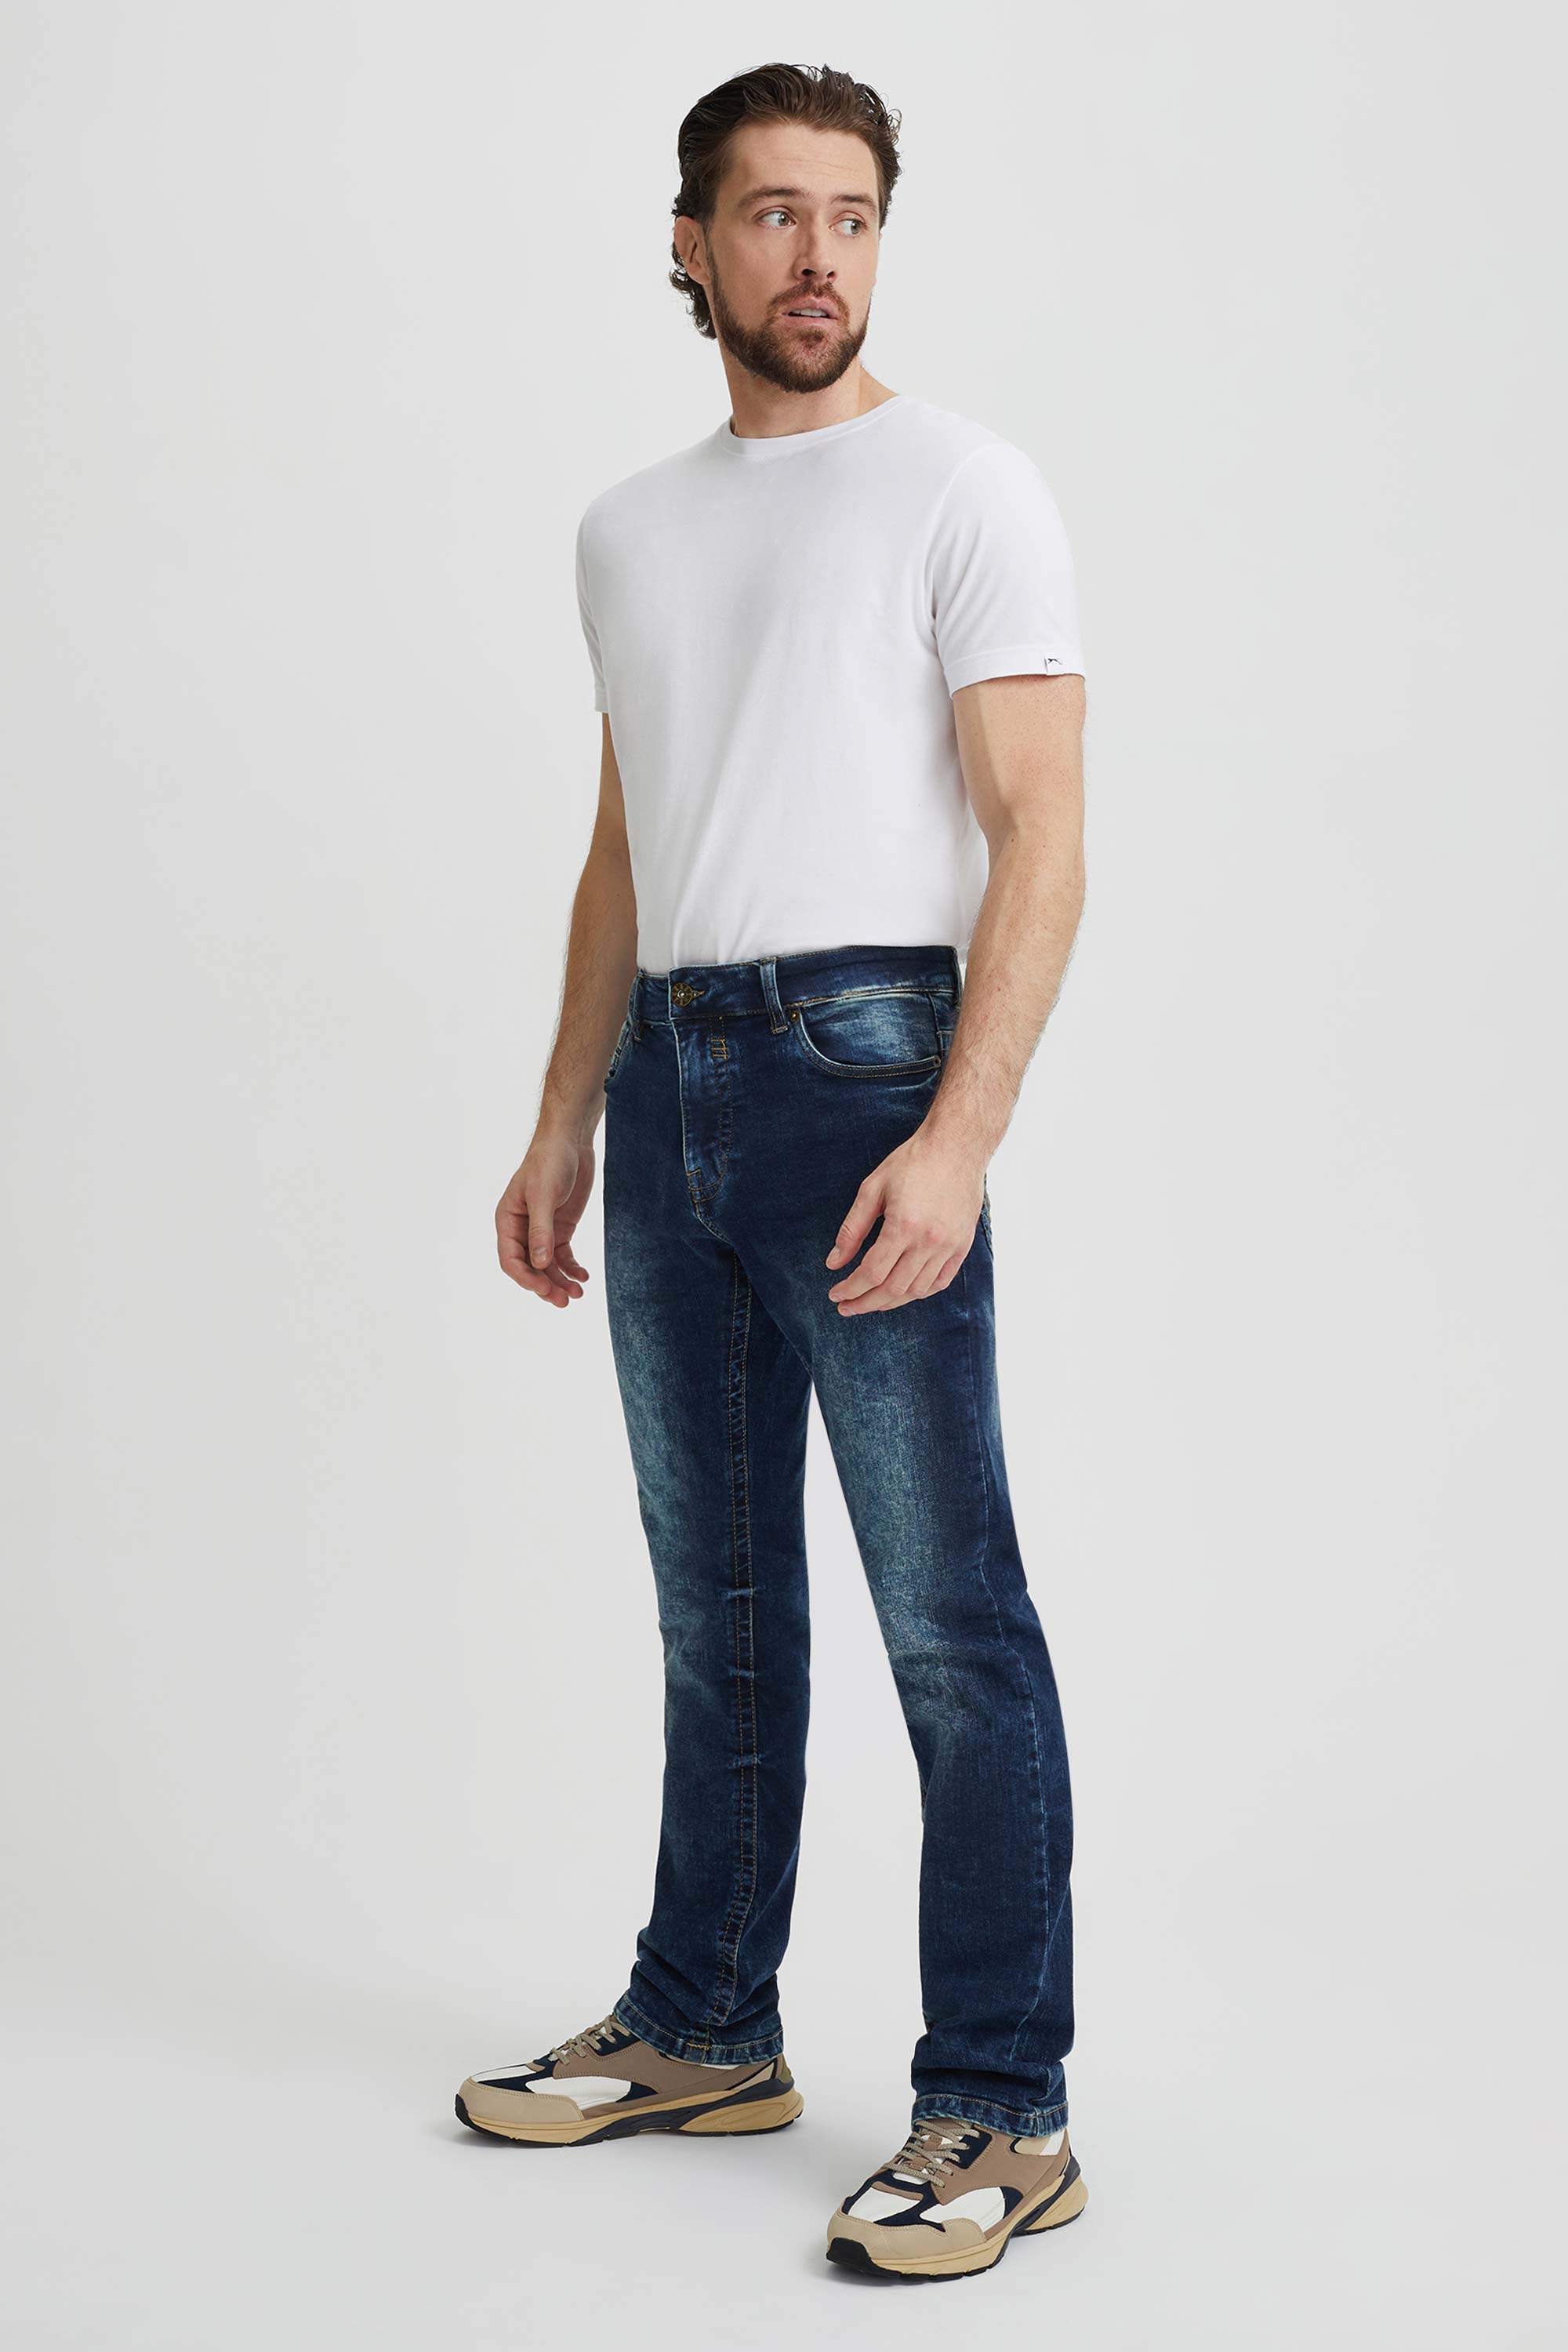 Wearing Boot Cut Jeans with Jordans | TikTok